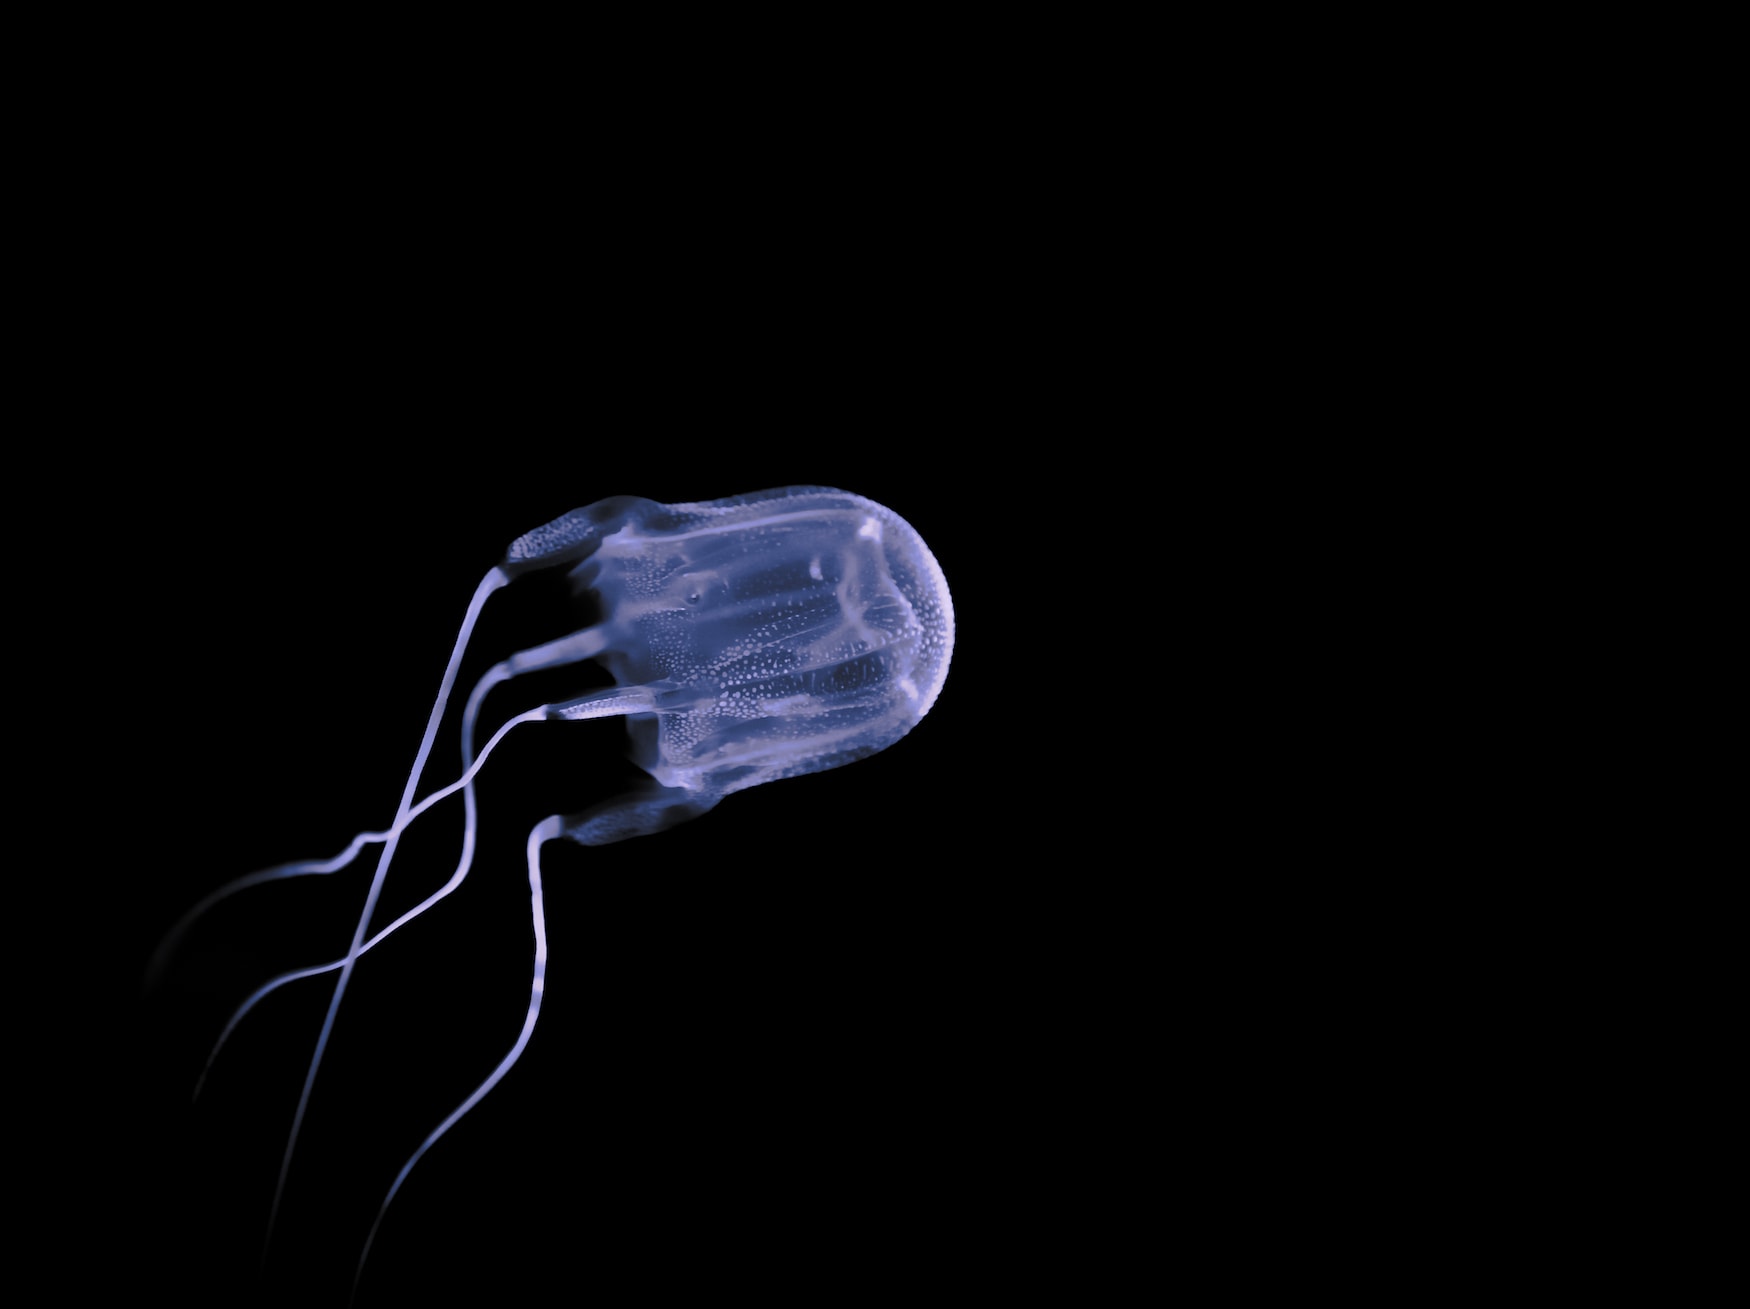 Würfelqualle schwimmt in Ozean, eines der gefährlichsten Tiere der Welt